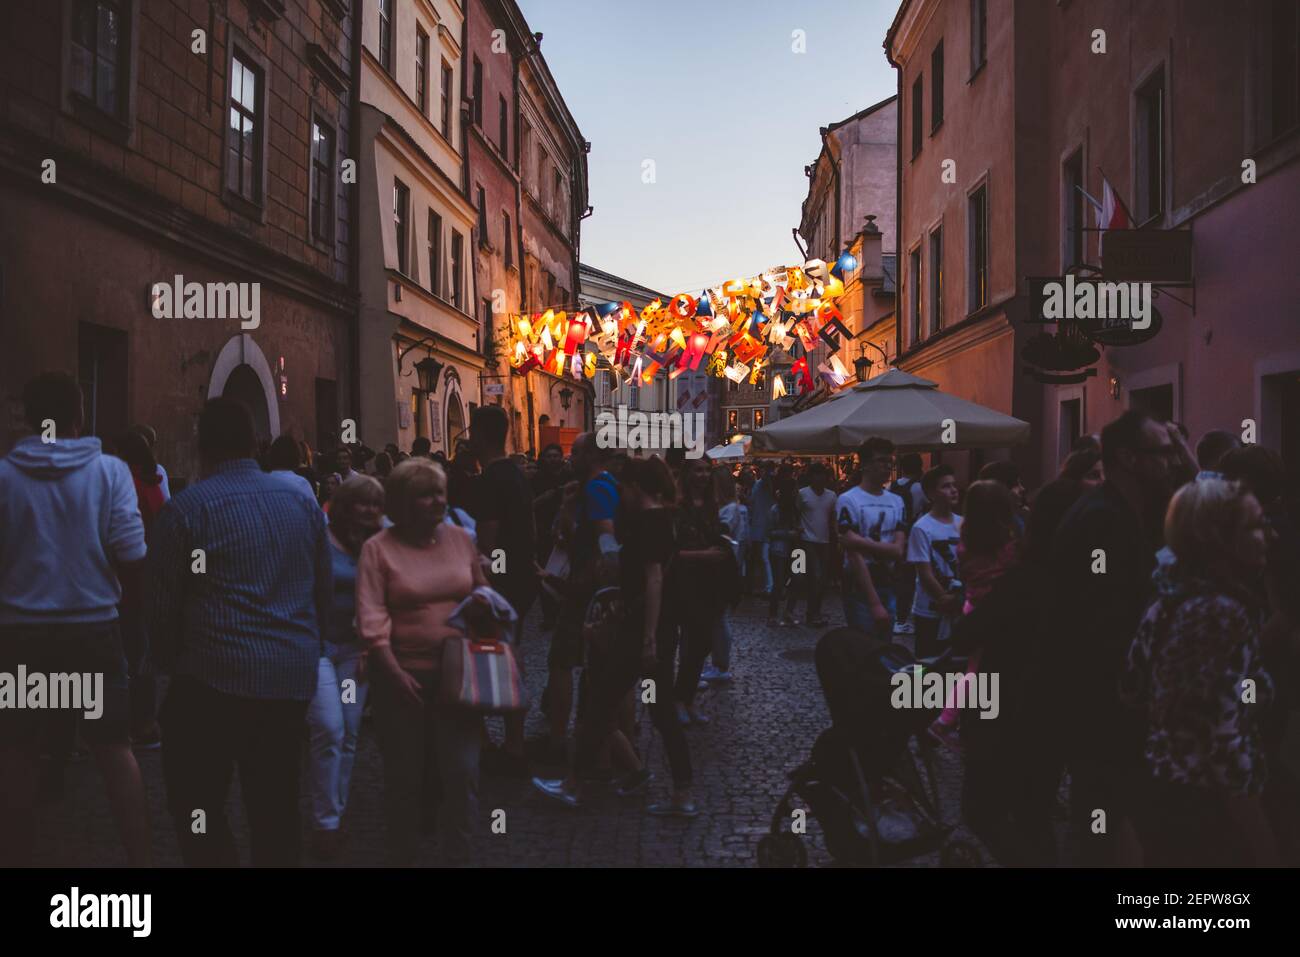 Lublin, Polonia - 1 de junio de 2019: Calle Złota abarrotada durante la Noche de la Cultura (NOC Kultury) en el casco antiguo Foto de stock